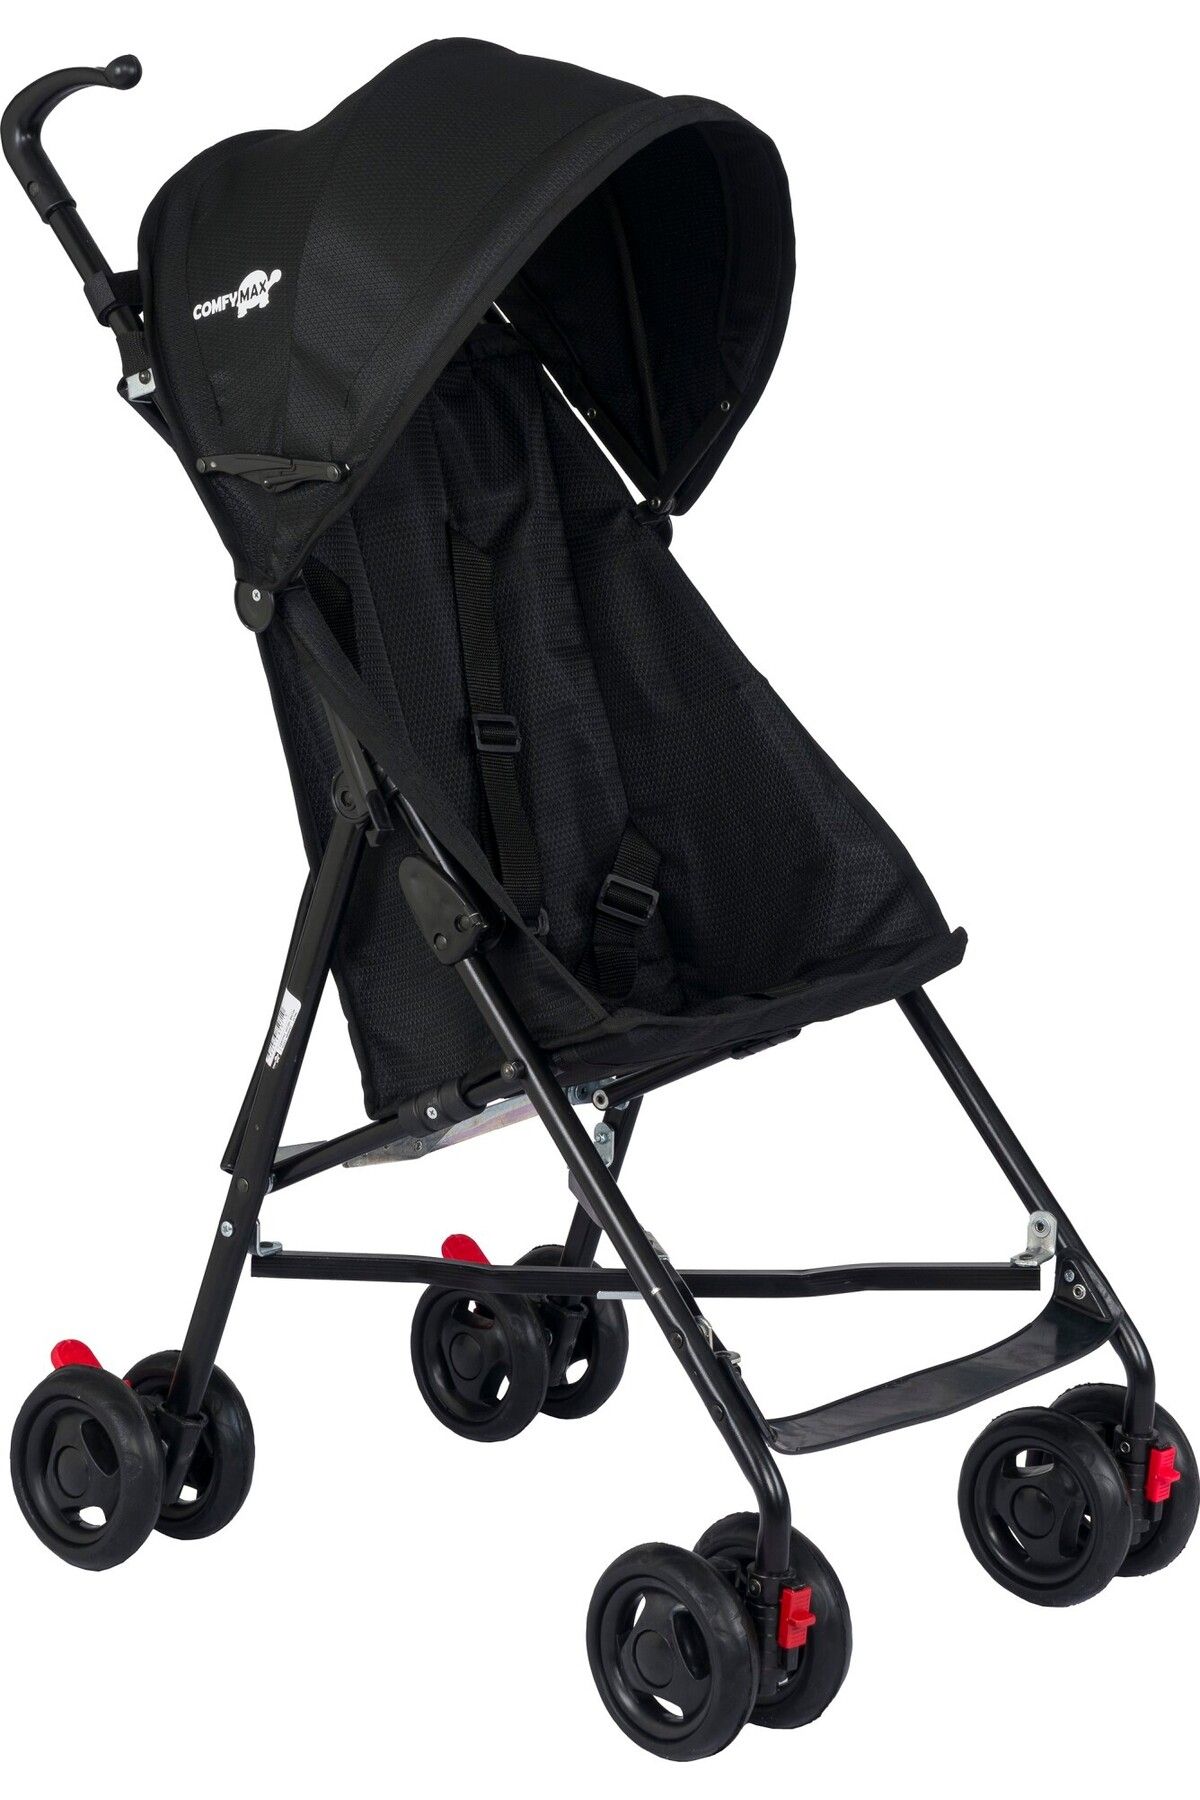 Comfymax omfort II Baston Bebek Arabası - Siyah